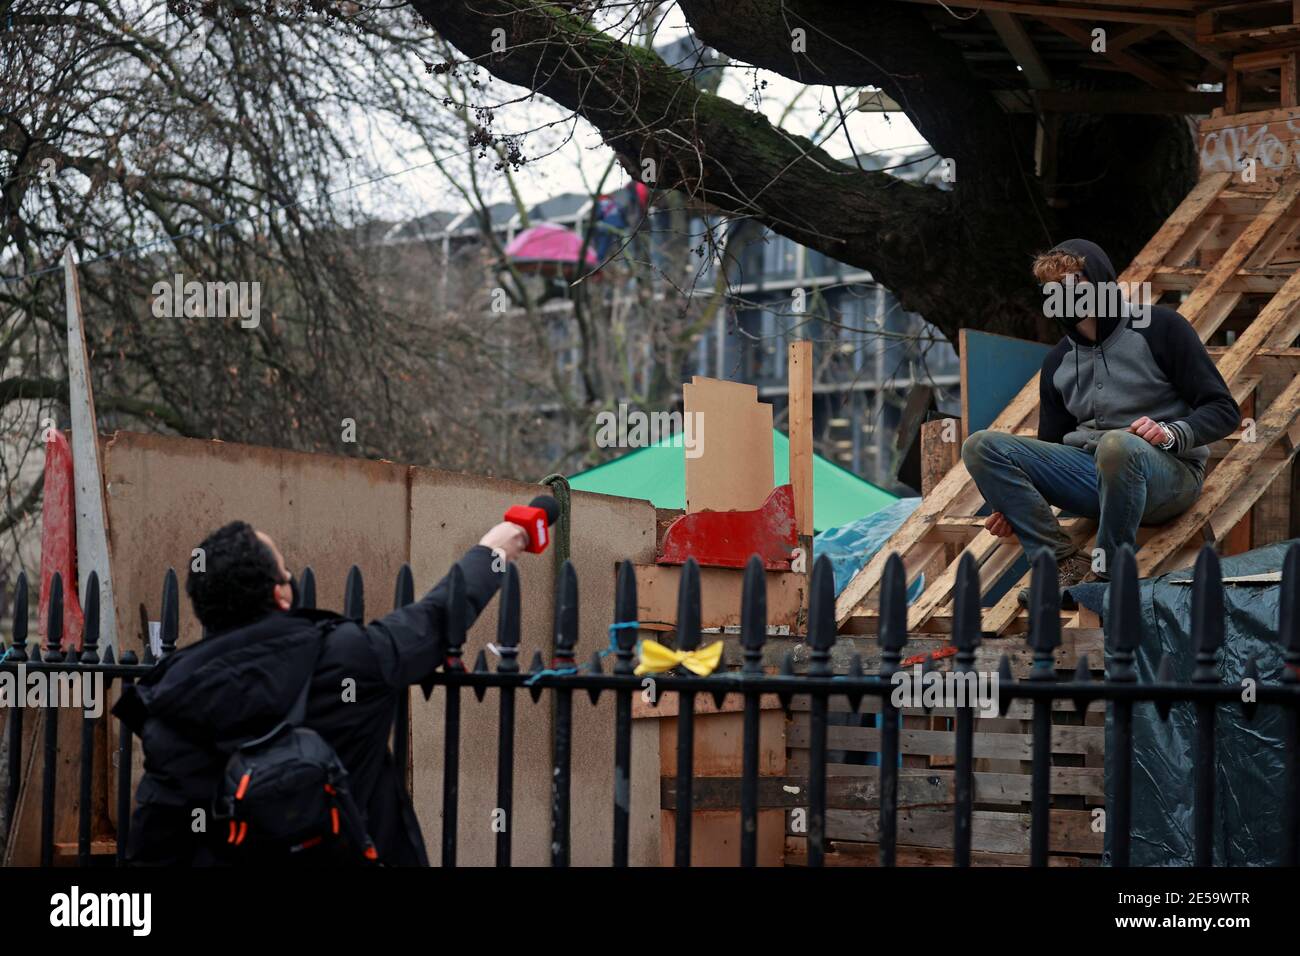 Un activista de la rebelión de extinción habla con un reportero en un campamento improvisado mientras otros ocupan túneles bajo Euston Square Gardens para protestar contra el ferrocarril de alta velocidad HS2 en Londres, Gran Bretaña, el 27 de enero de 2021. REUTERS/Hannah McKay Foto de stock